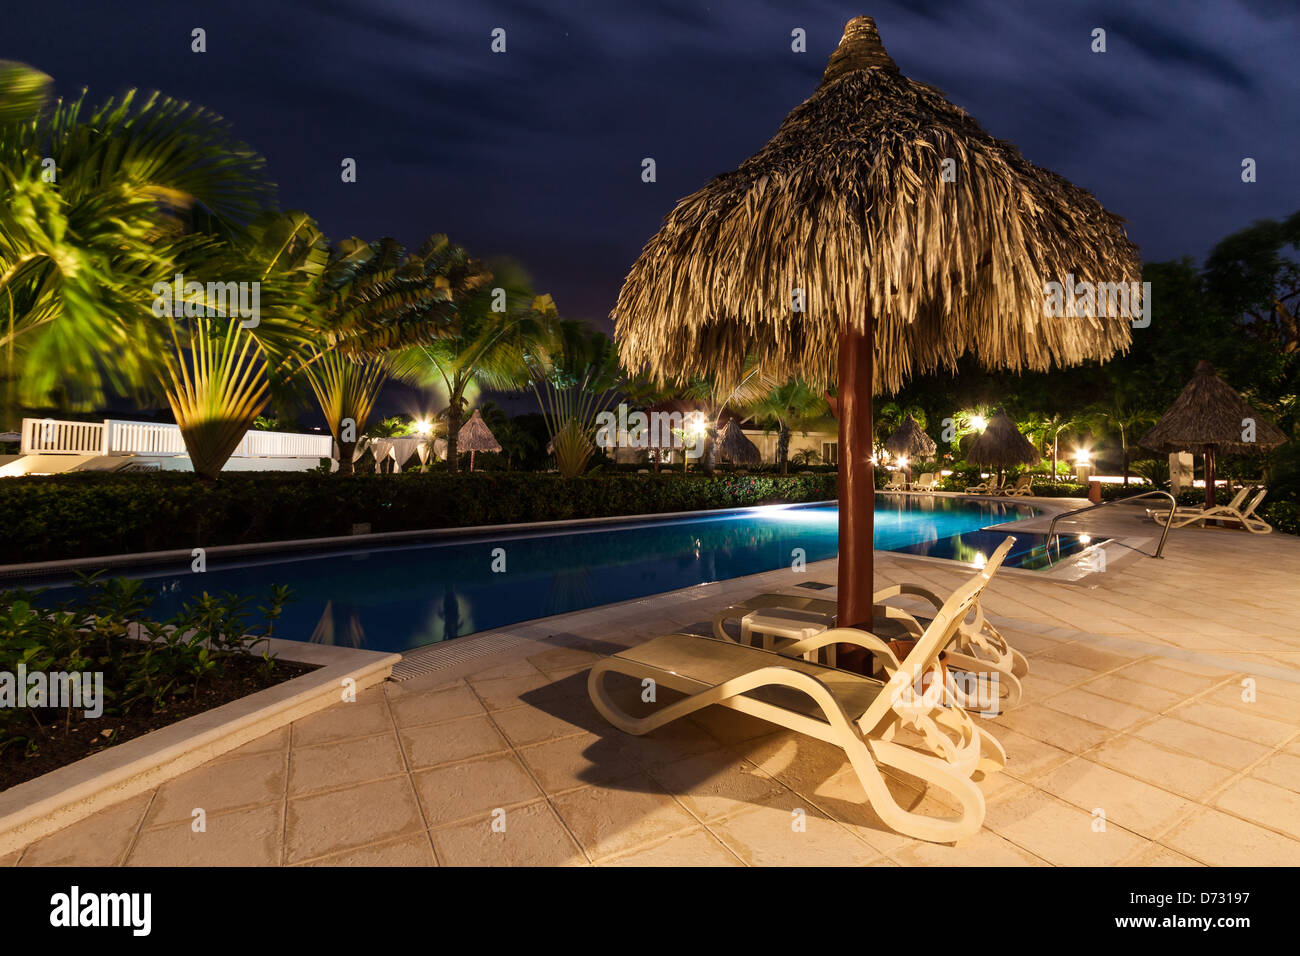 Parapluie de paille et deux sièges de plage à proximité d'une piscine illuminée par nuit Banque D'Images